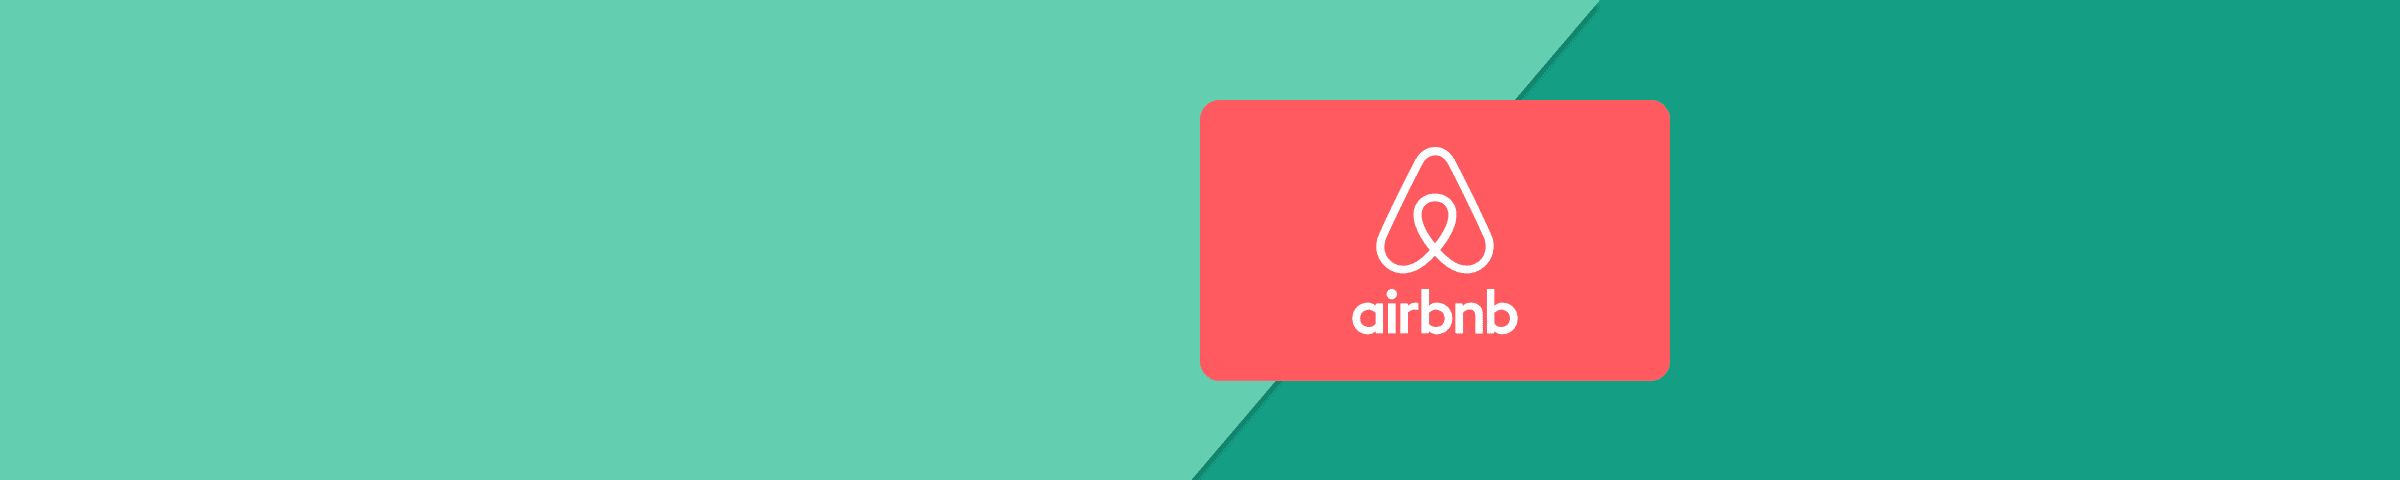 Airbnb Cadeaukaart